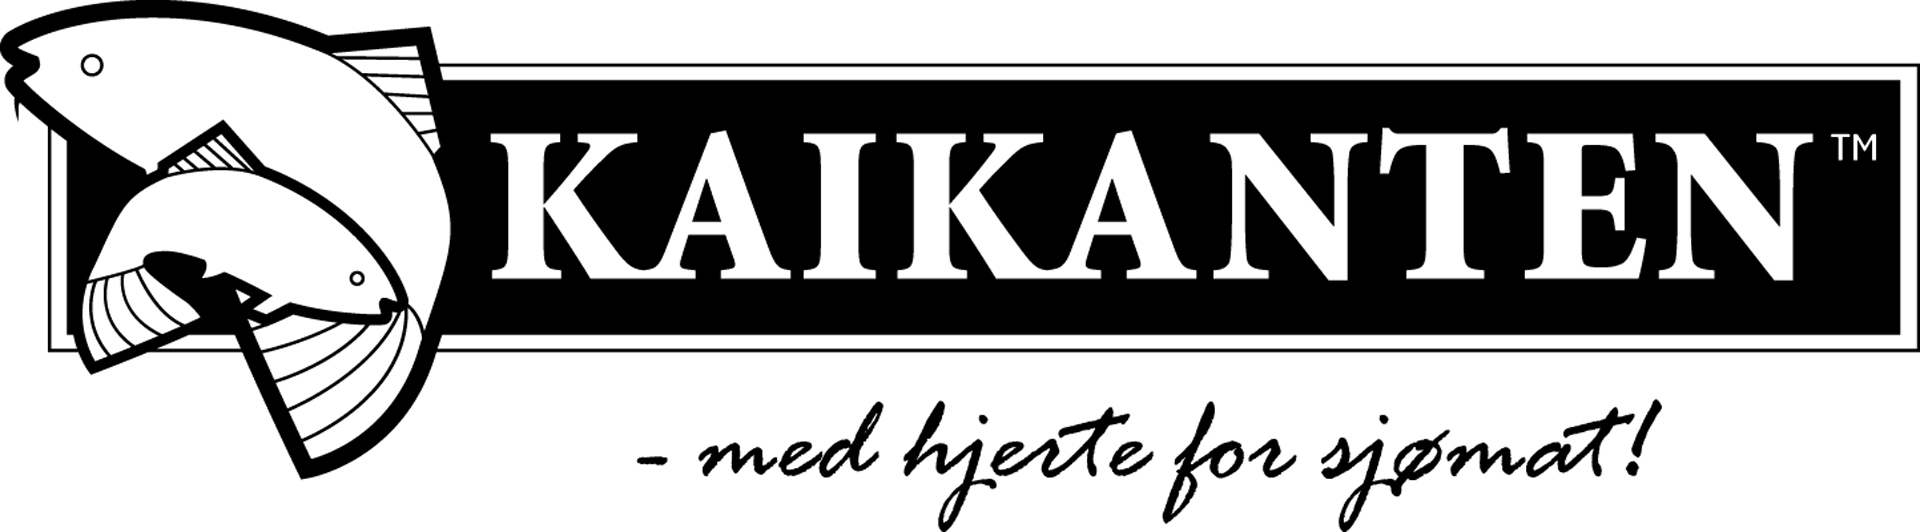 Kaikanten logo